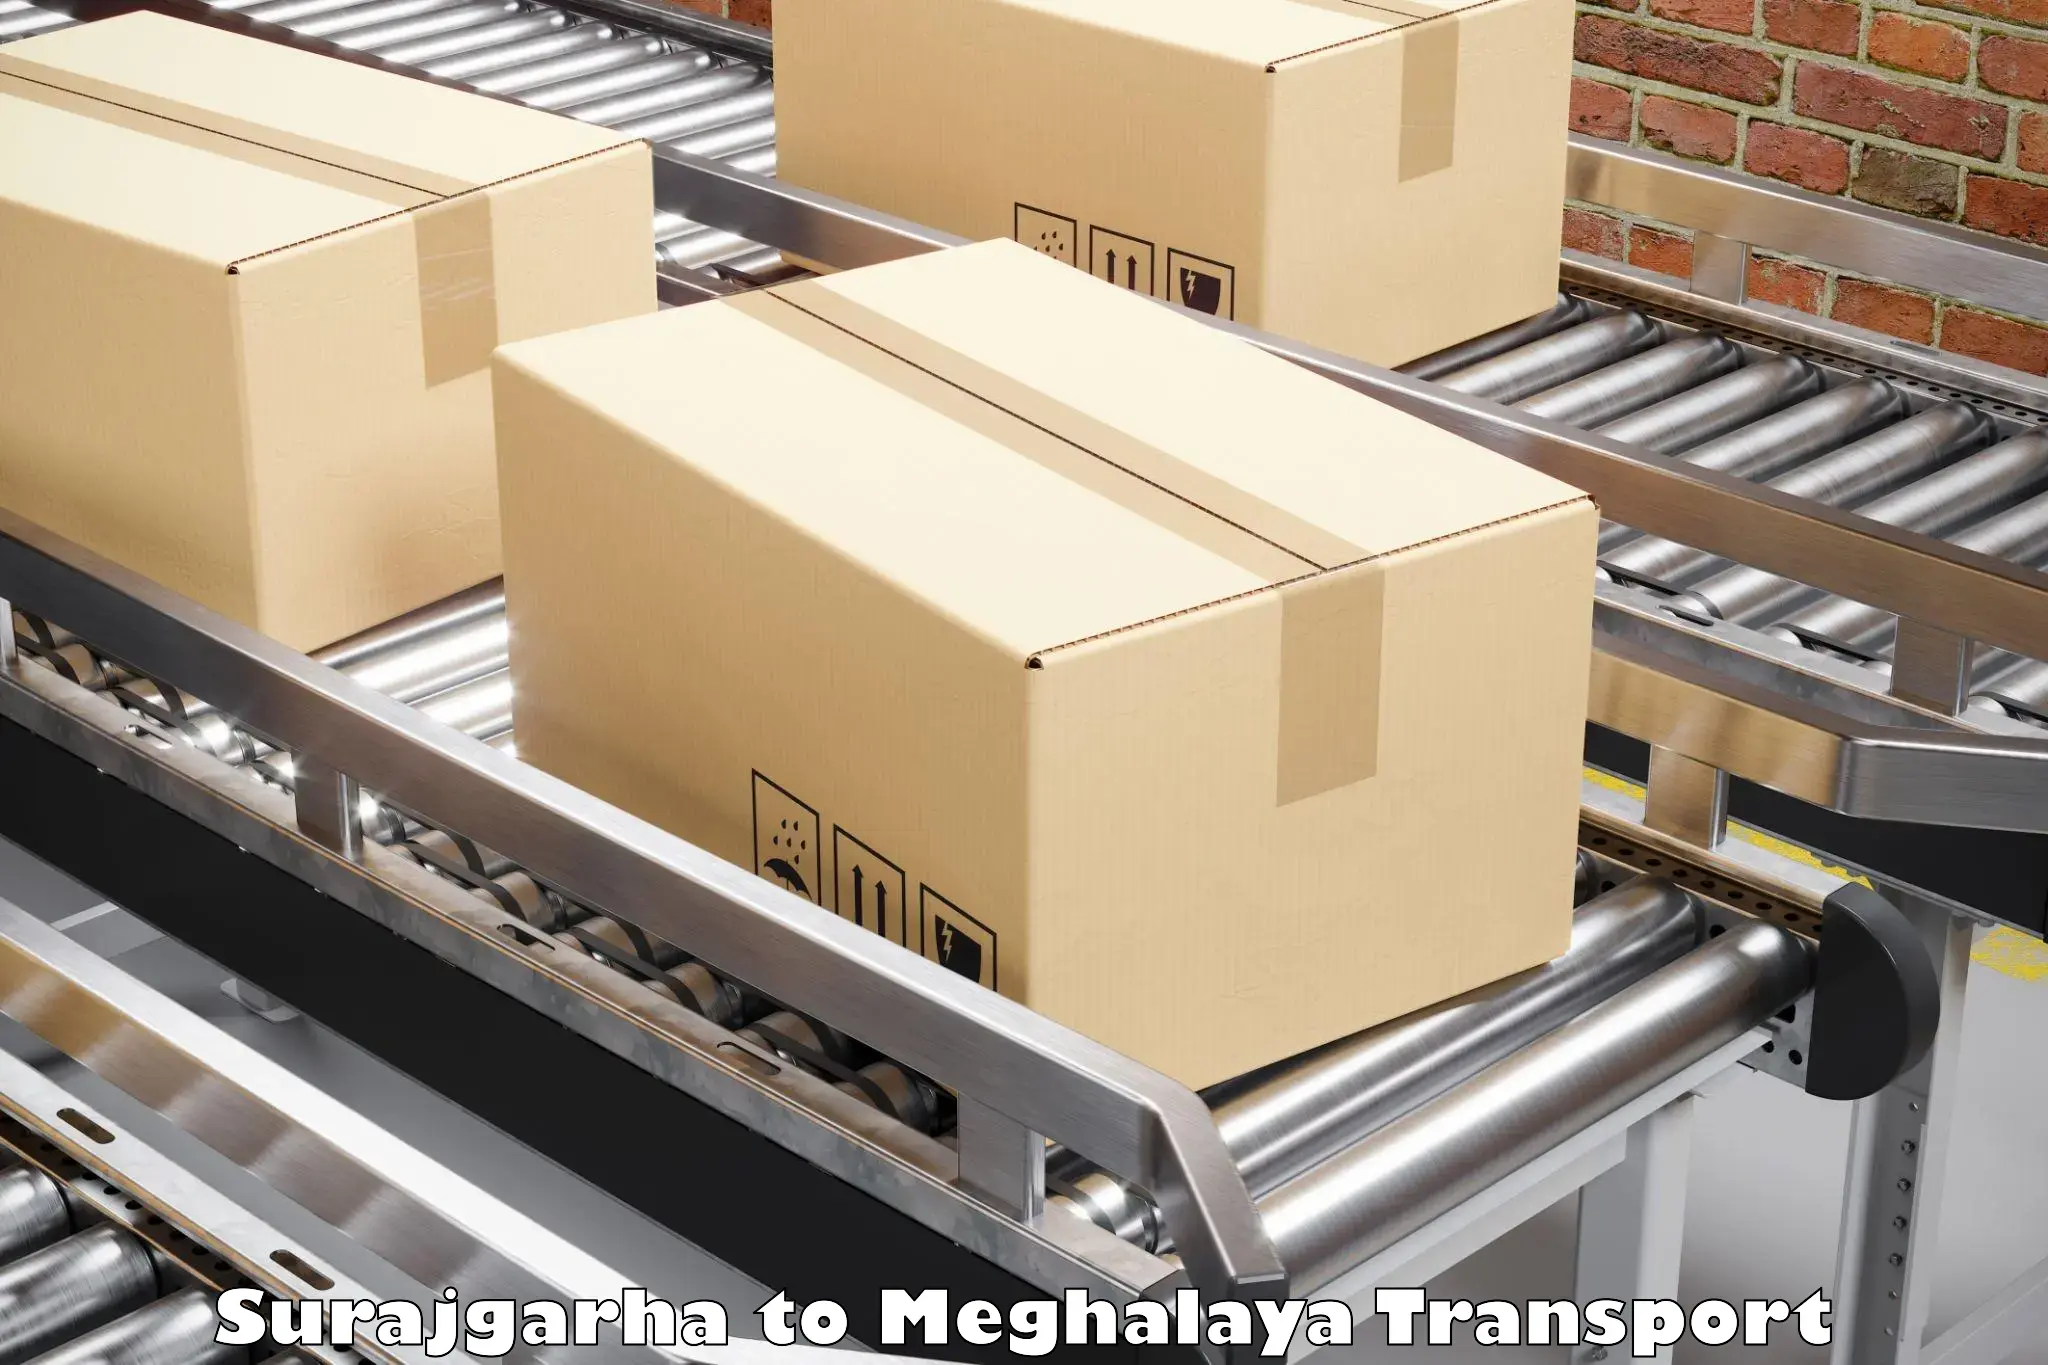 Luggage transport services Surajgarha to Meghalaya